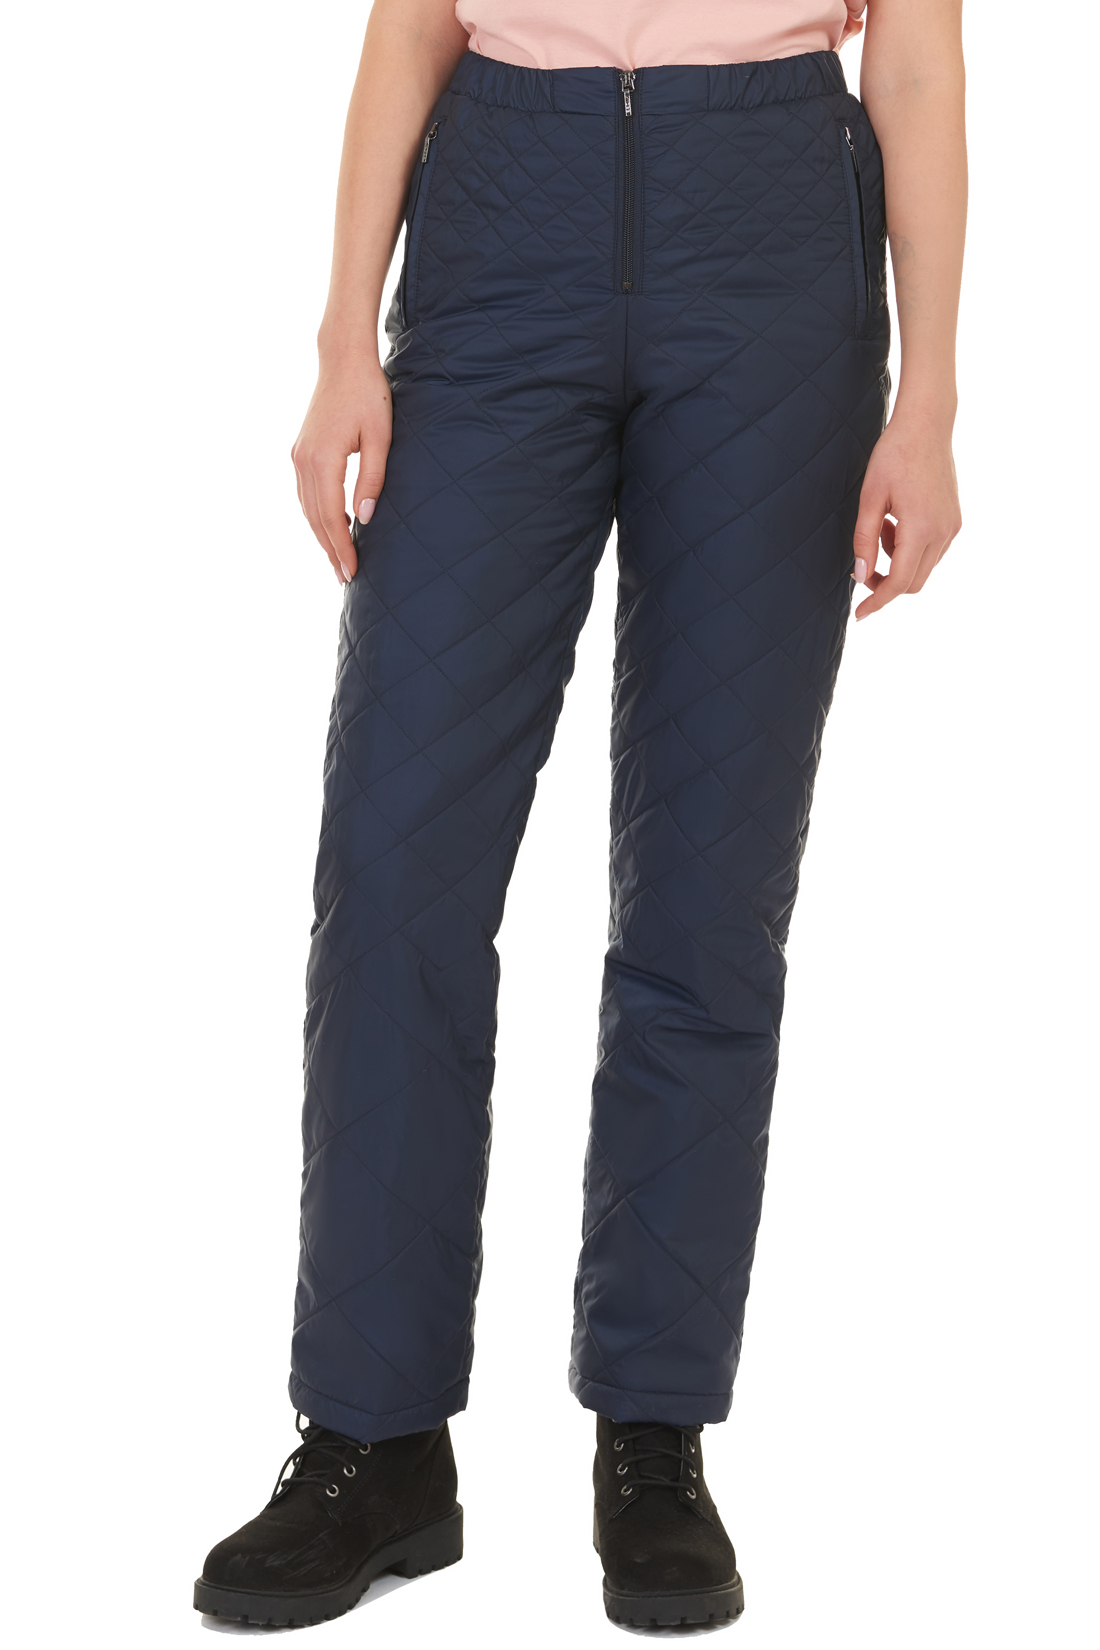 Утеплённые брюки на молнии (арт. baon B297506), размер XS, цвет синий Утеплённые брюки на молнии (арт. baon B297506) - фото 1